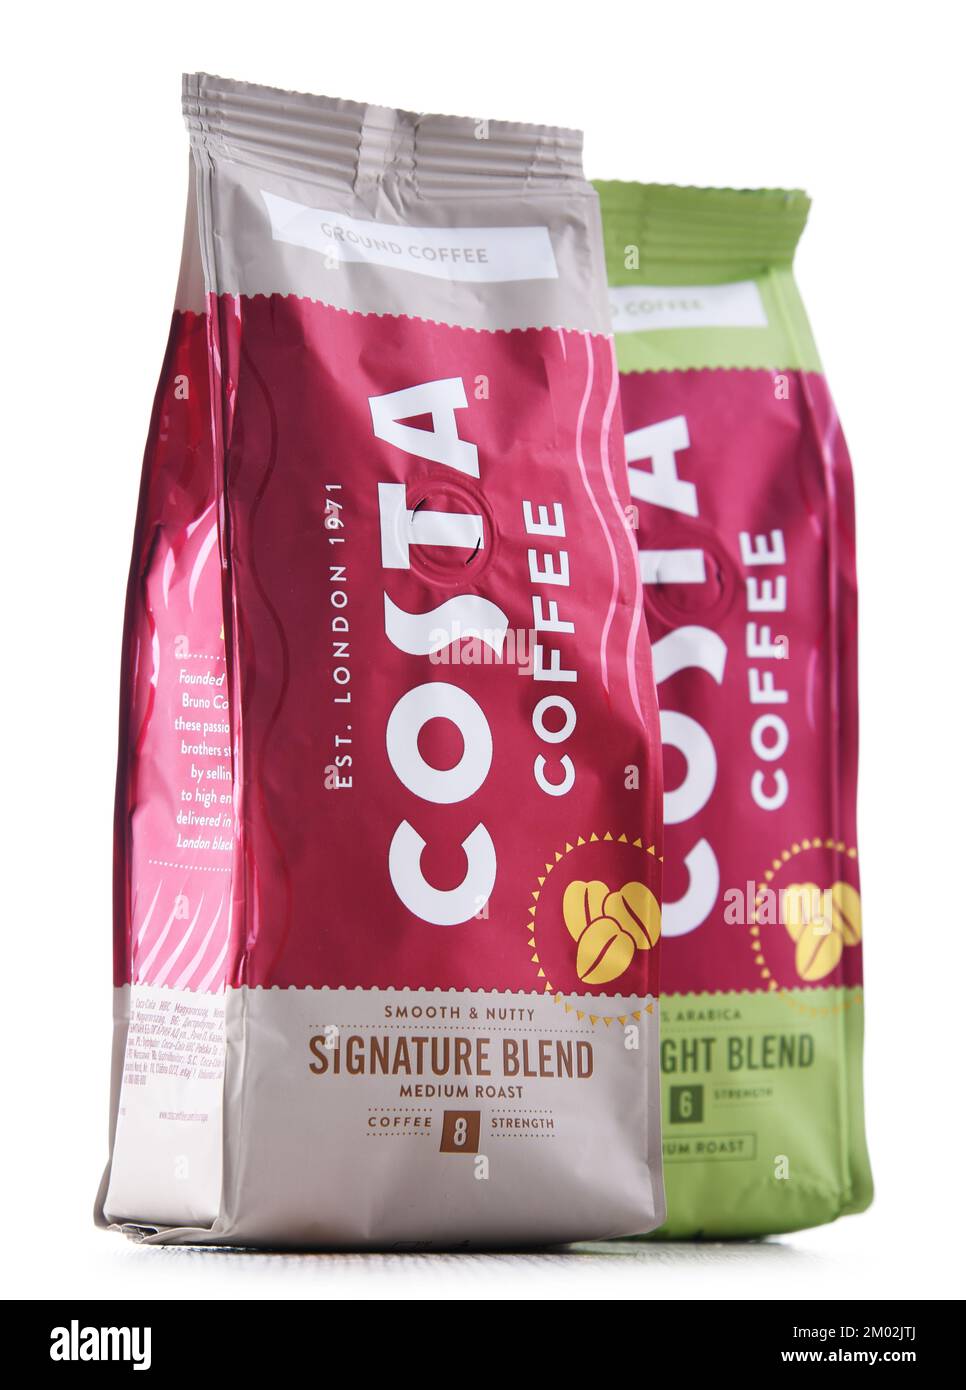 POZNAN, POLOGNE - JUL 14, 2022: Paquets de Costa Coffee, une marque de la société multinationale britannique de coffee House dont le siège social est à Dunstable, Bedfordshire Banque D'Images